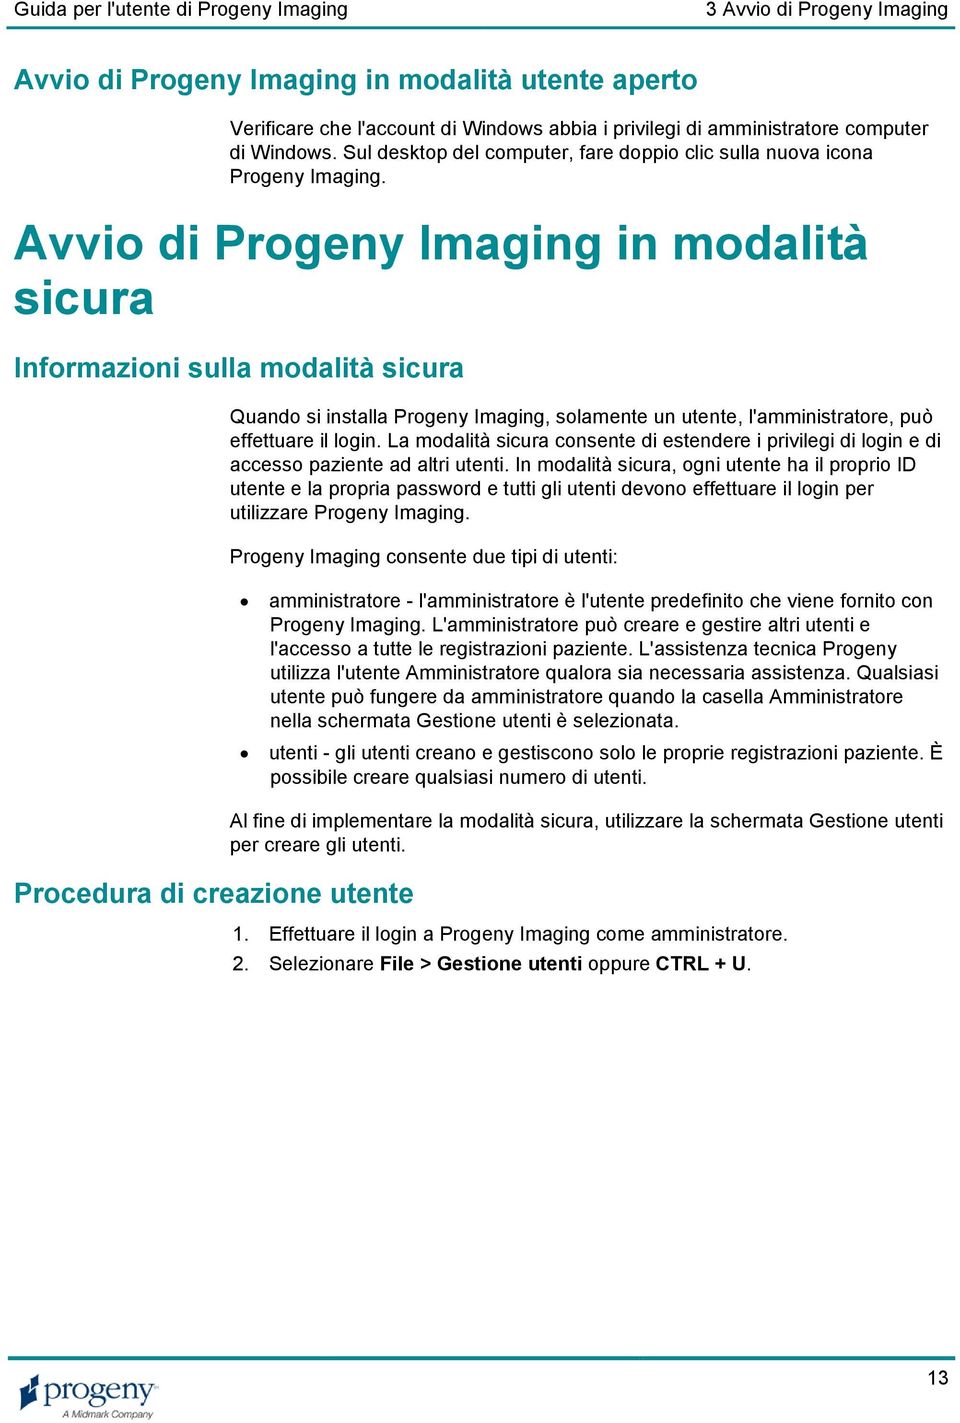 Avvio di Progeny Imaging in modalità sicura Informazioni sulla modalità sicura Procedura di creazione utente Quando si installa Progeny Imaging, solamente un utente, l'amministratore, può effettuare